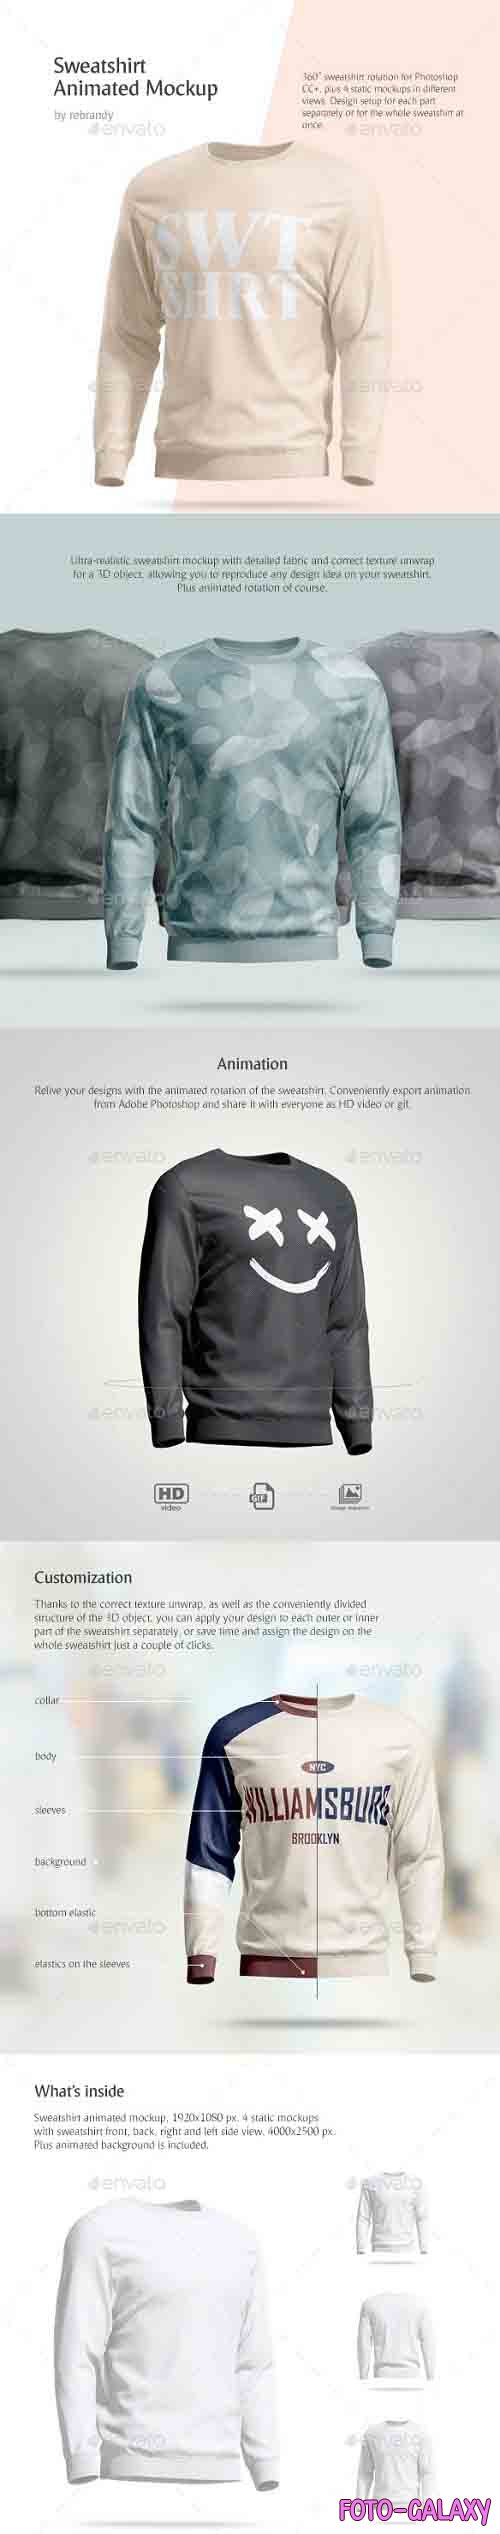 CreativeMarket - Sweatshirt Animated Mockup 4520102